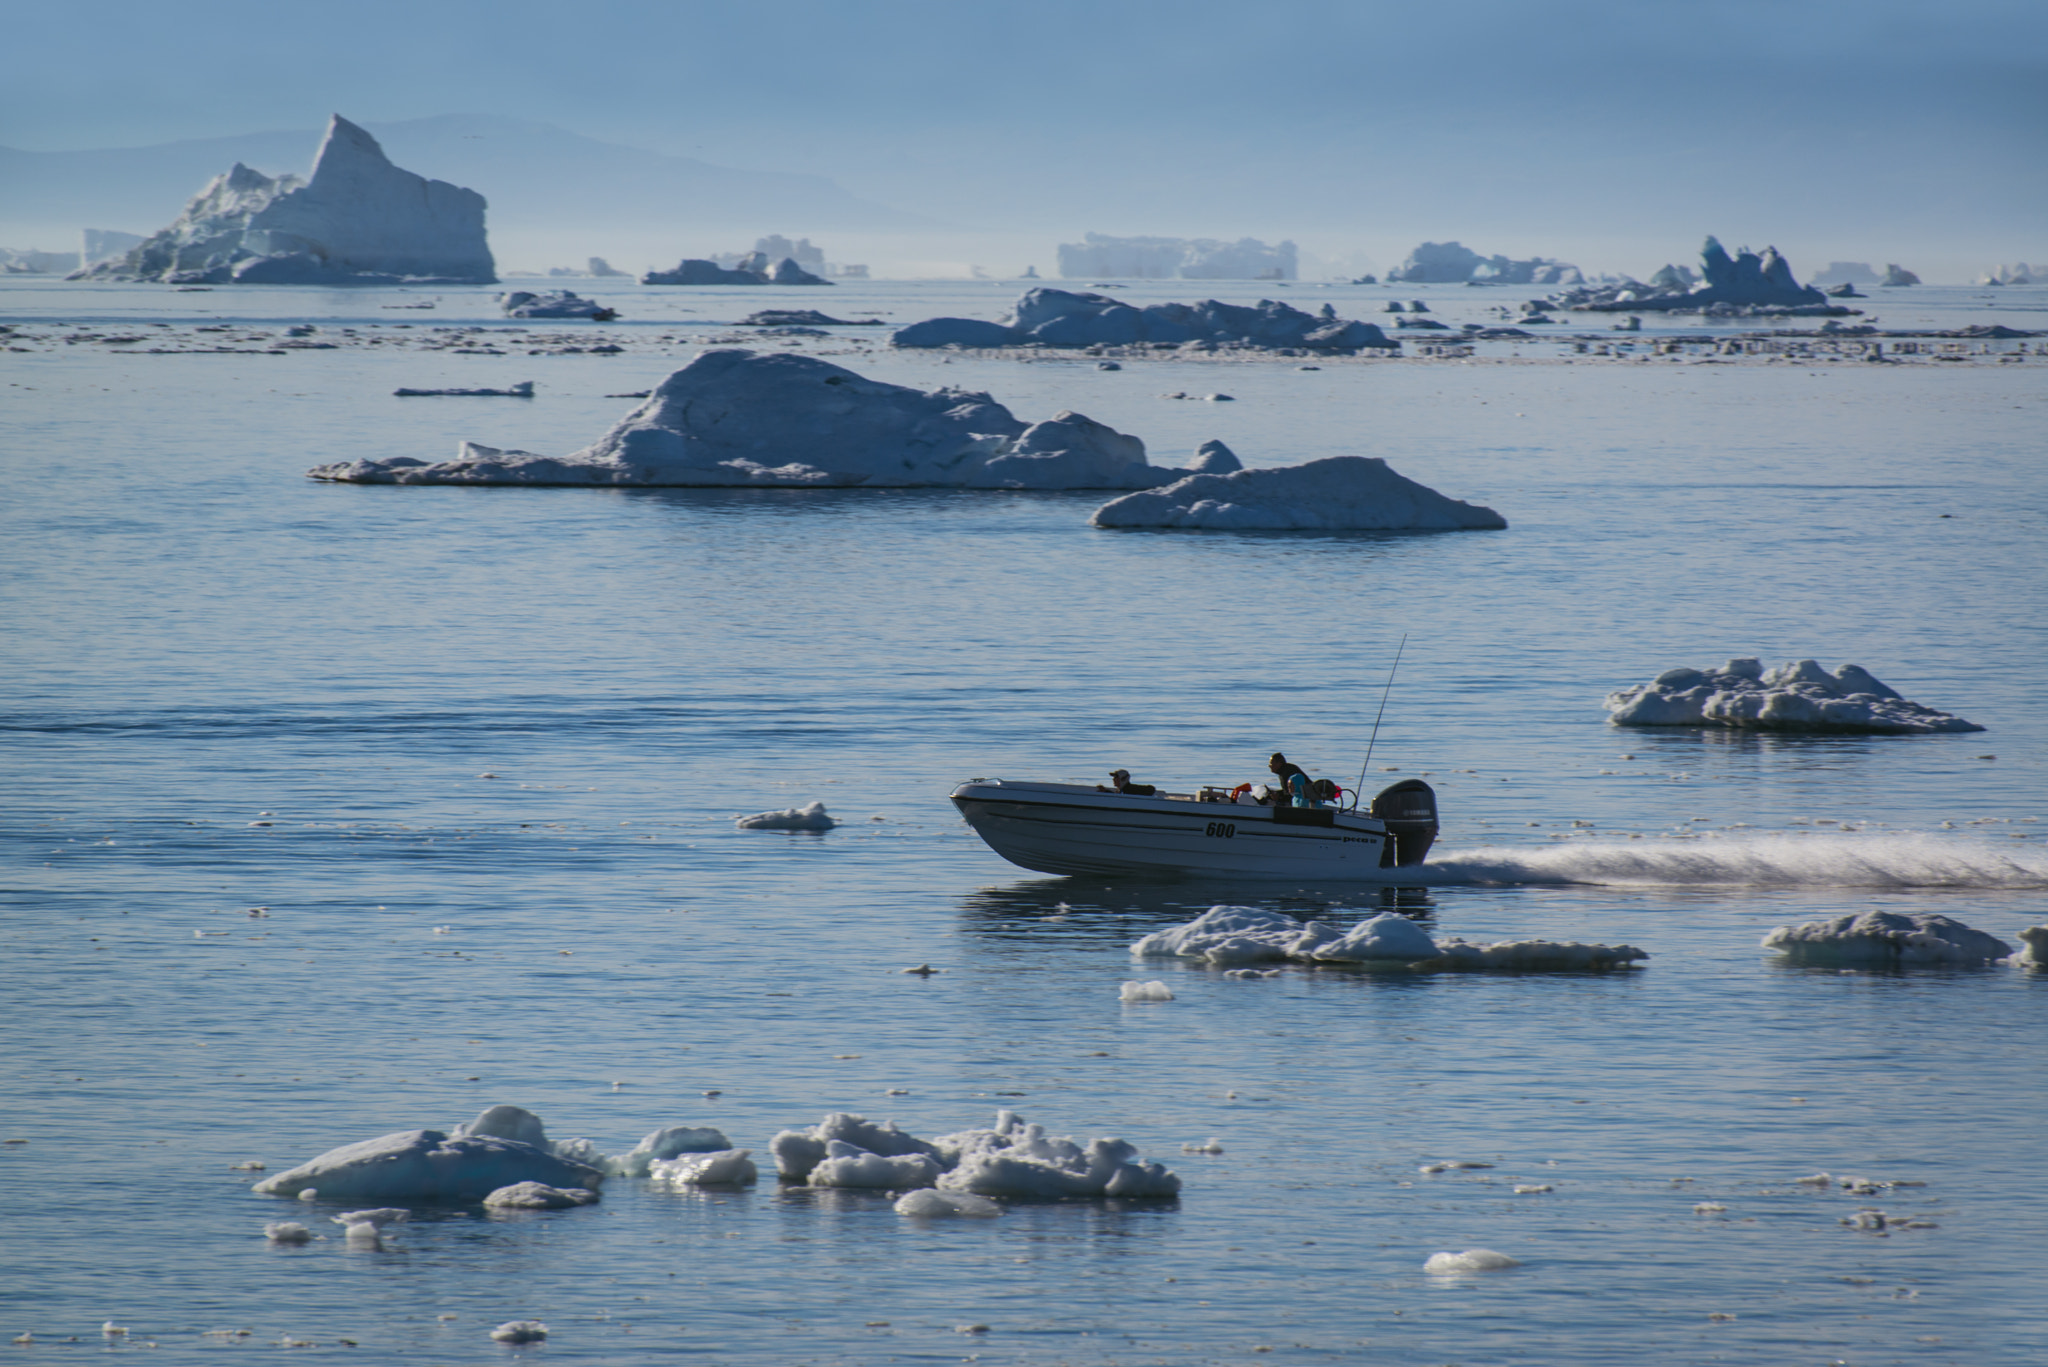 Nikon D800 sample photo. Racing among the icebergs photography